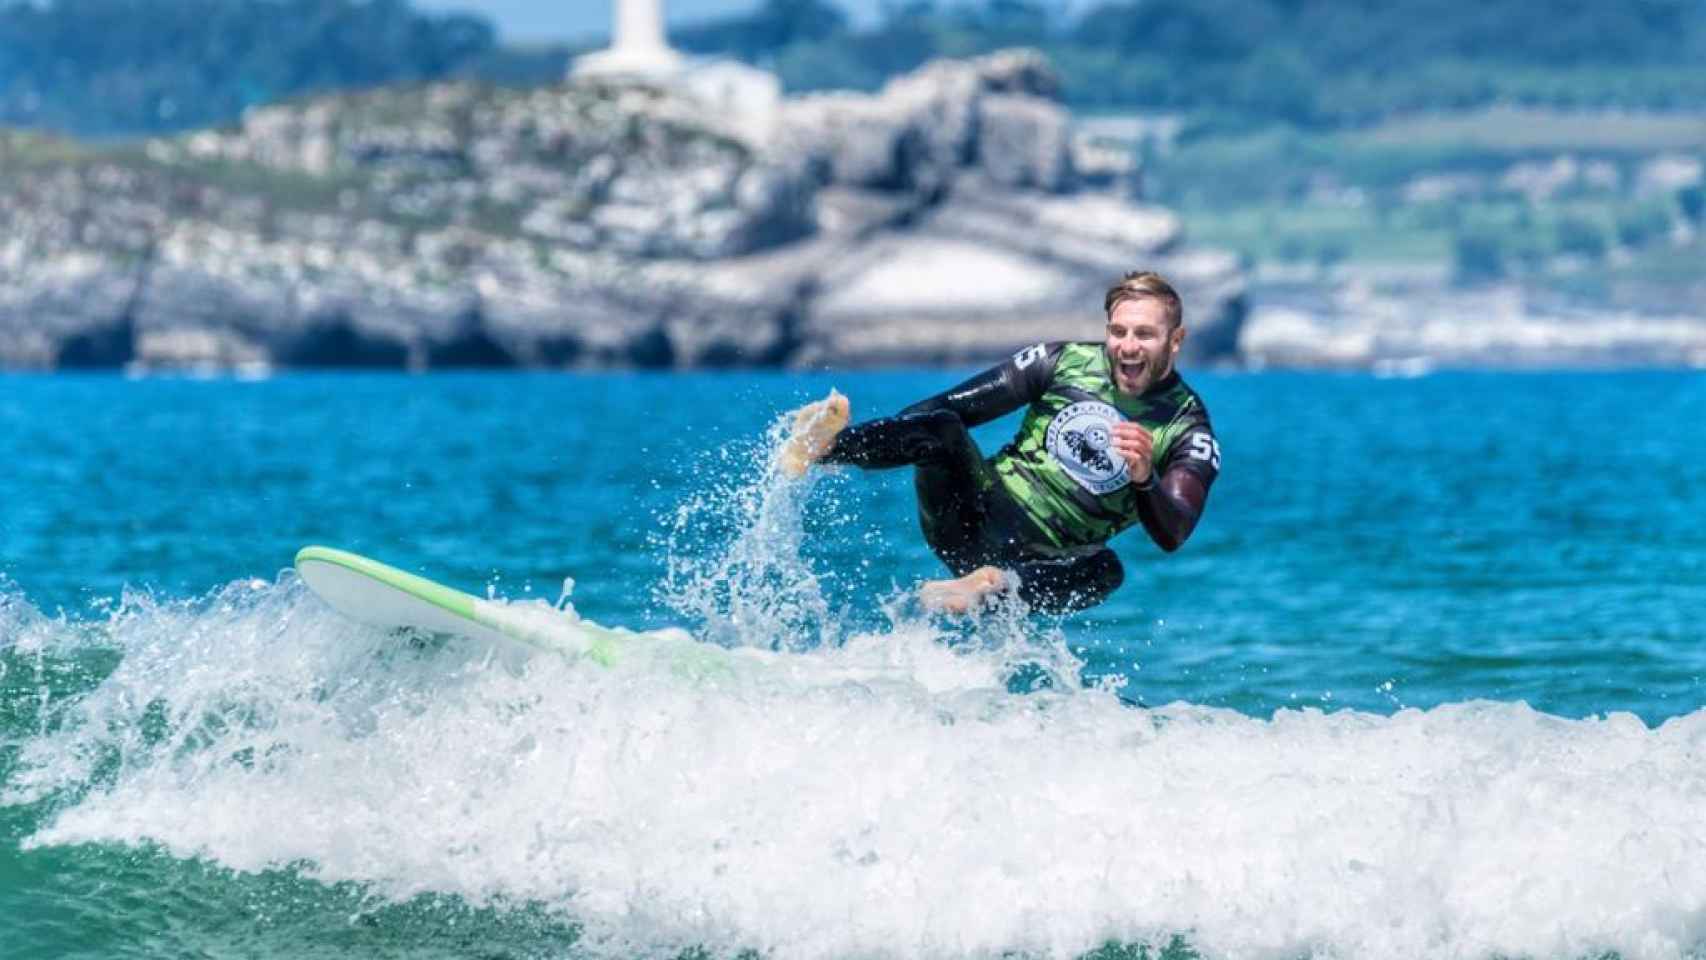 Matías Roure surfea desde hace dos años y se ha convertido en un pasión para él.